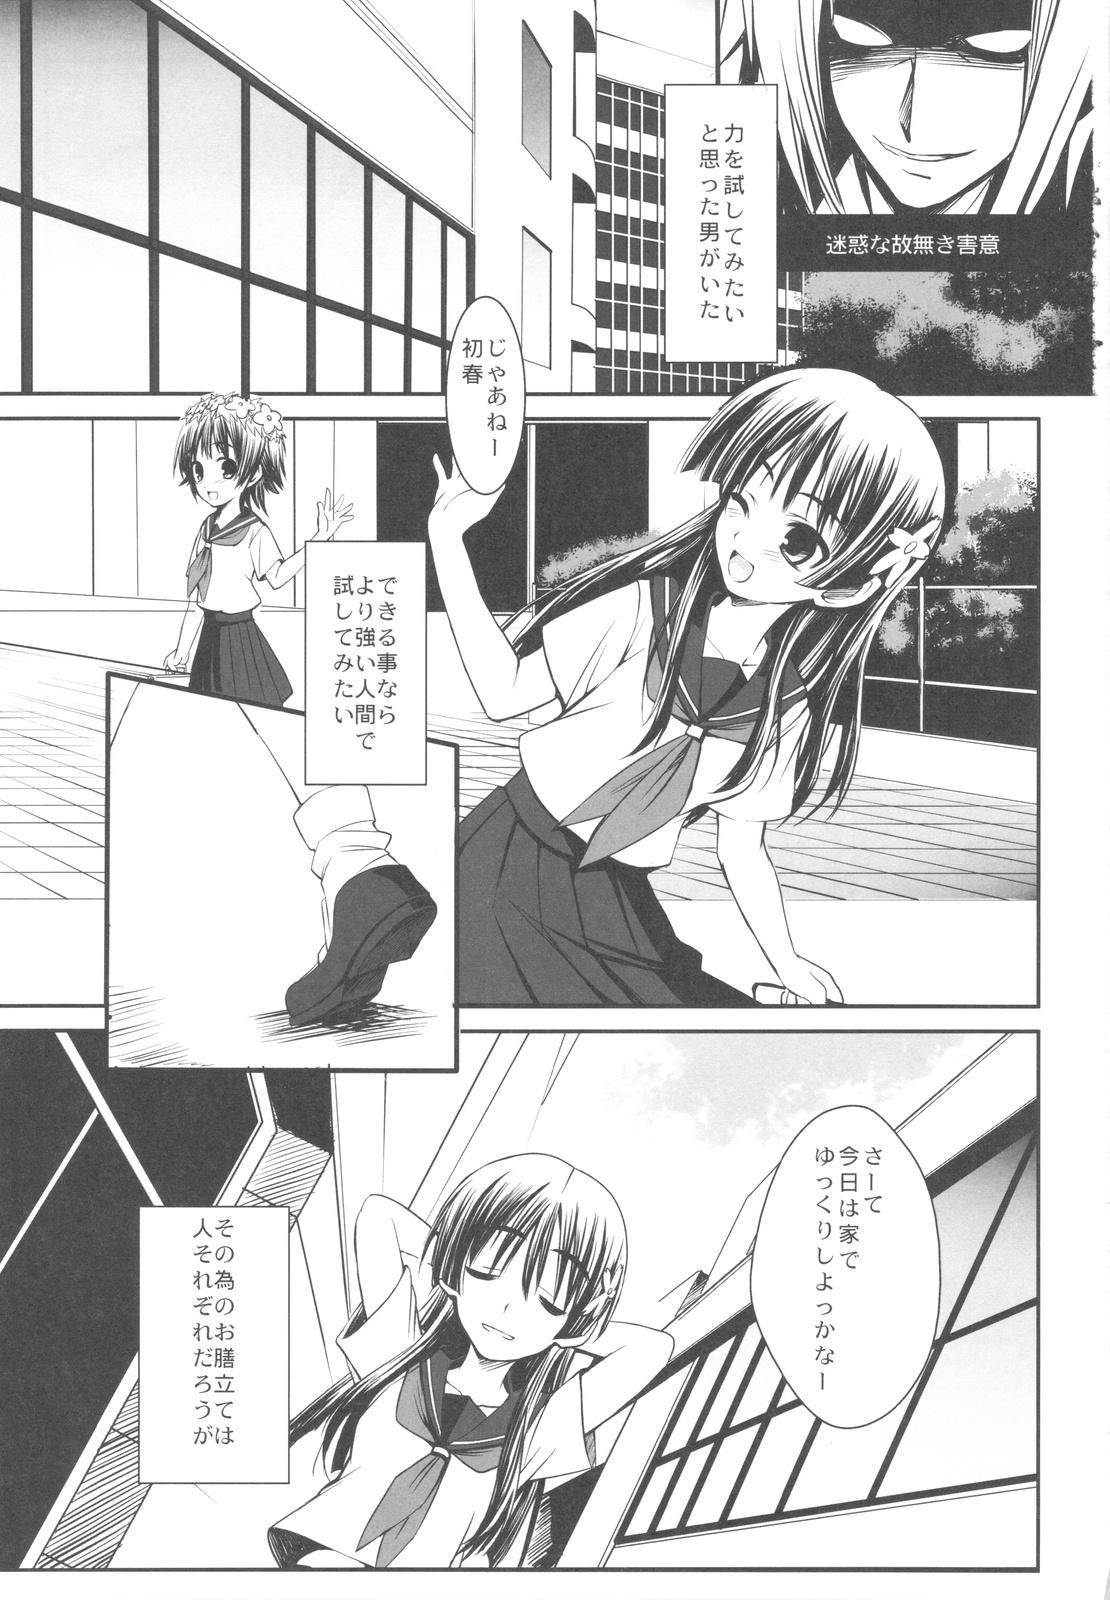 Fetish ERECTLIC THUNDER - Toaru kagaku no railgun Sperm - Page 3